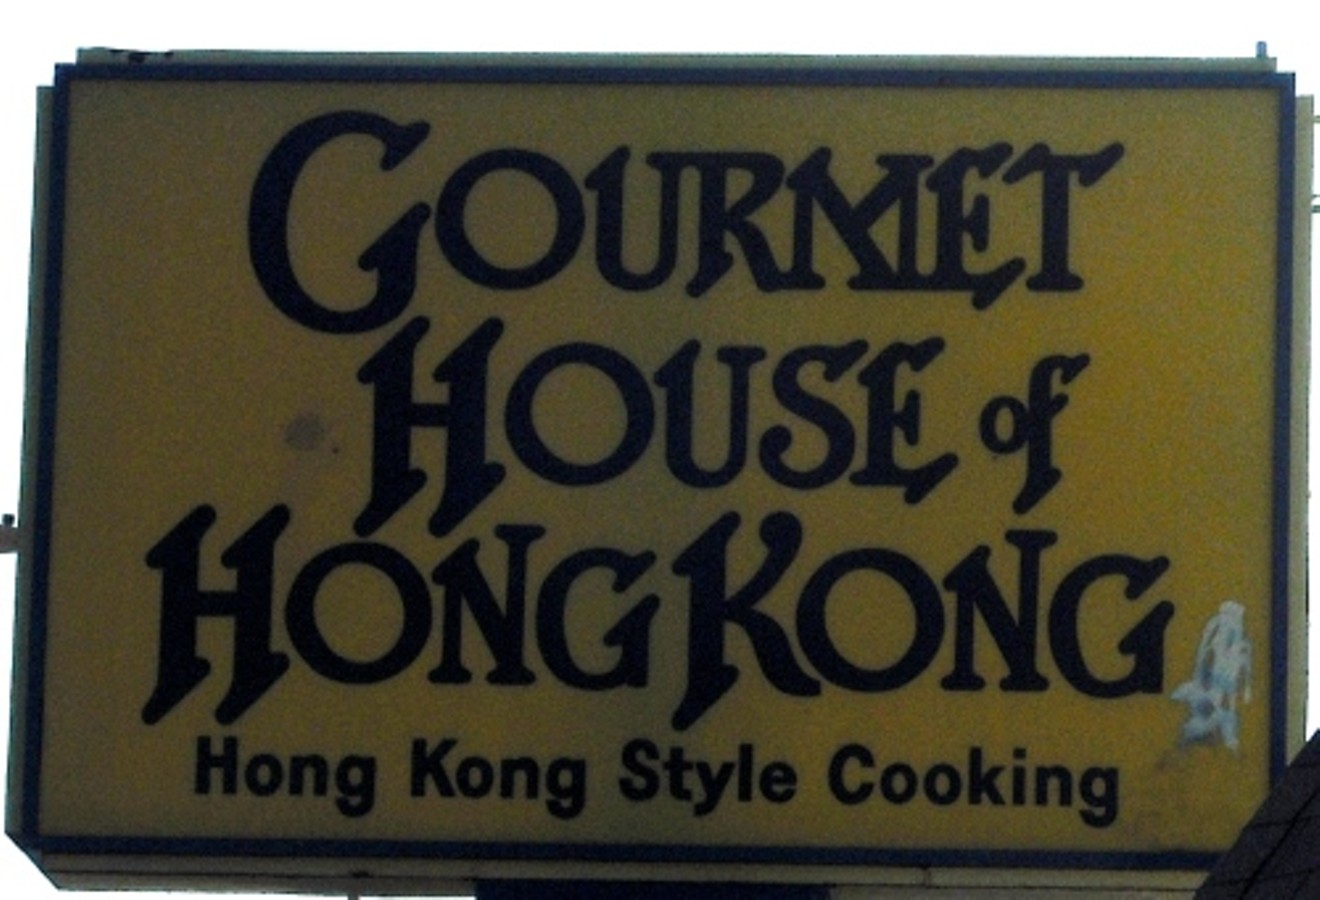 Gourmet House of Hong Kong will close after a long run.